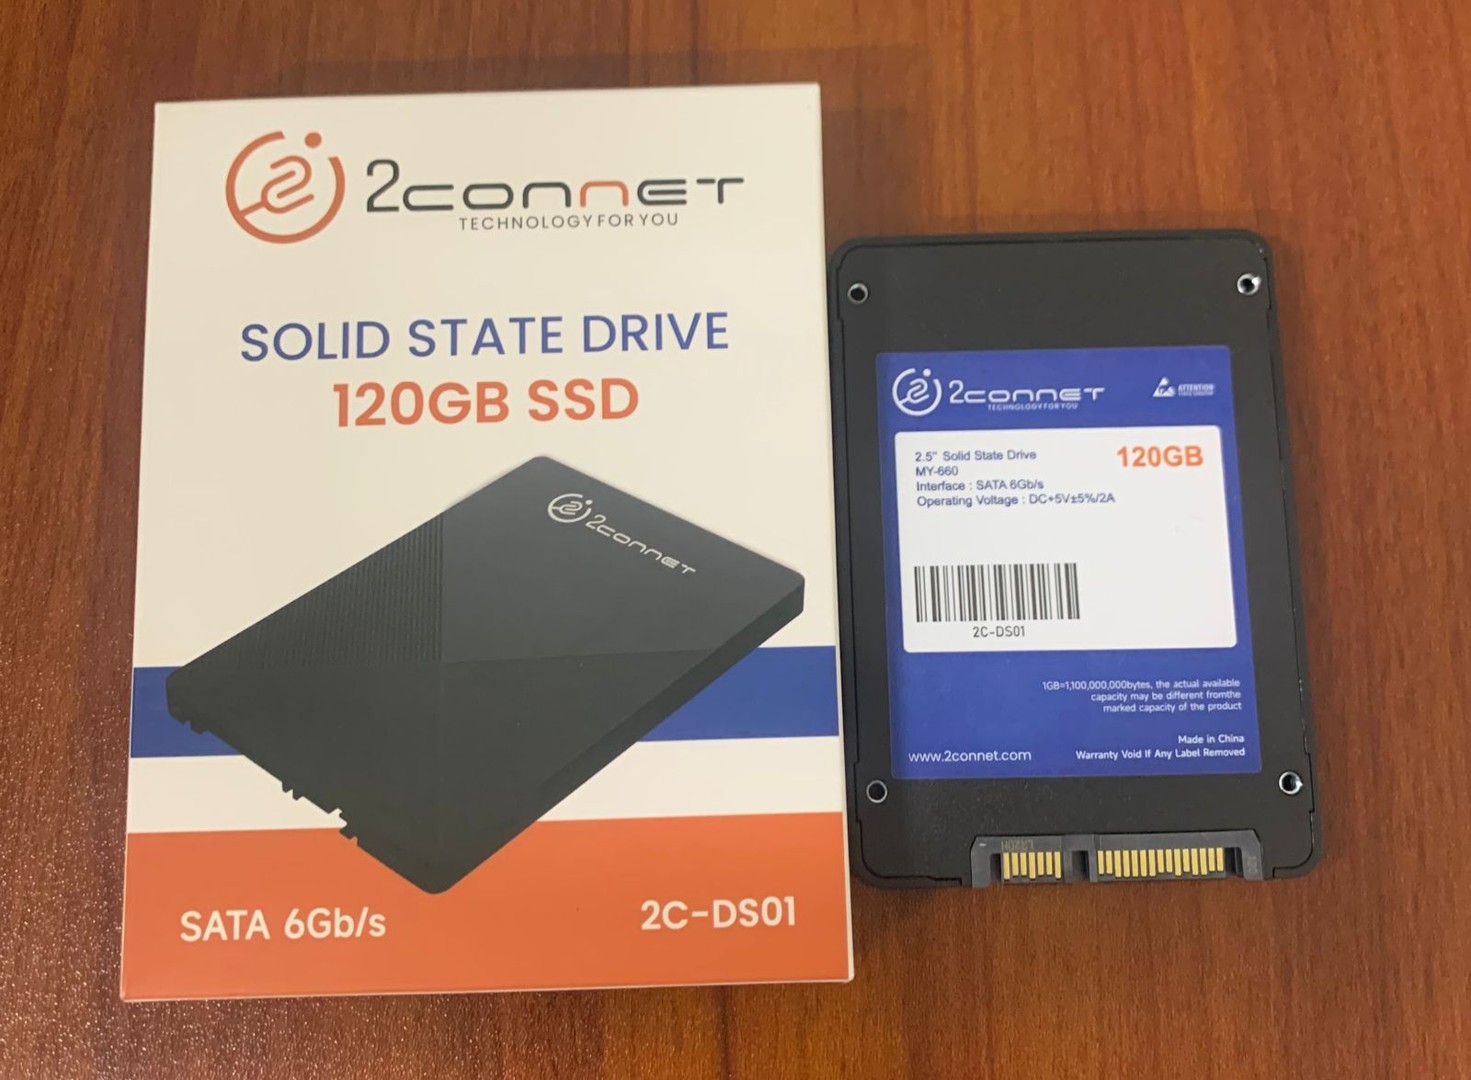 accesorios para electronica - Disco duro SSD 120GB 2.5" SATA 1 año de garantia 1